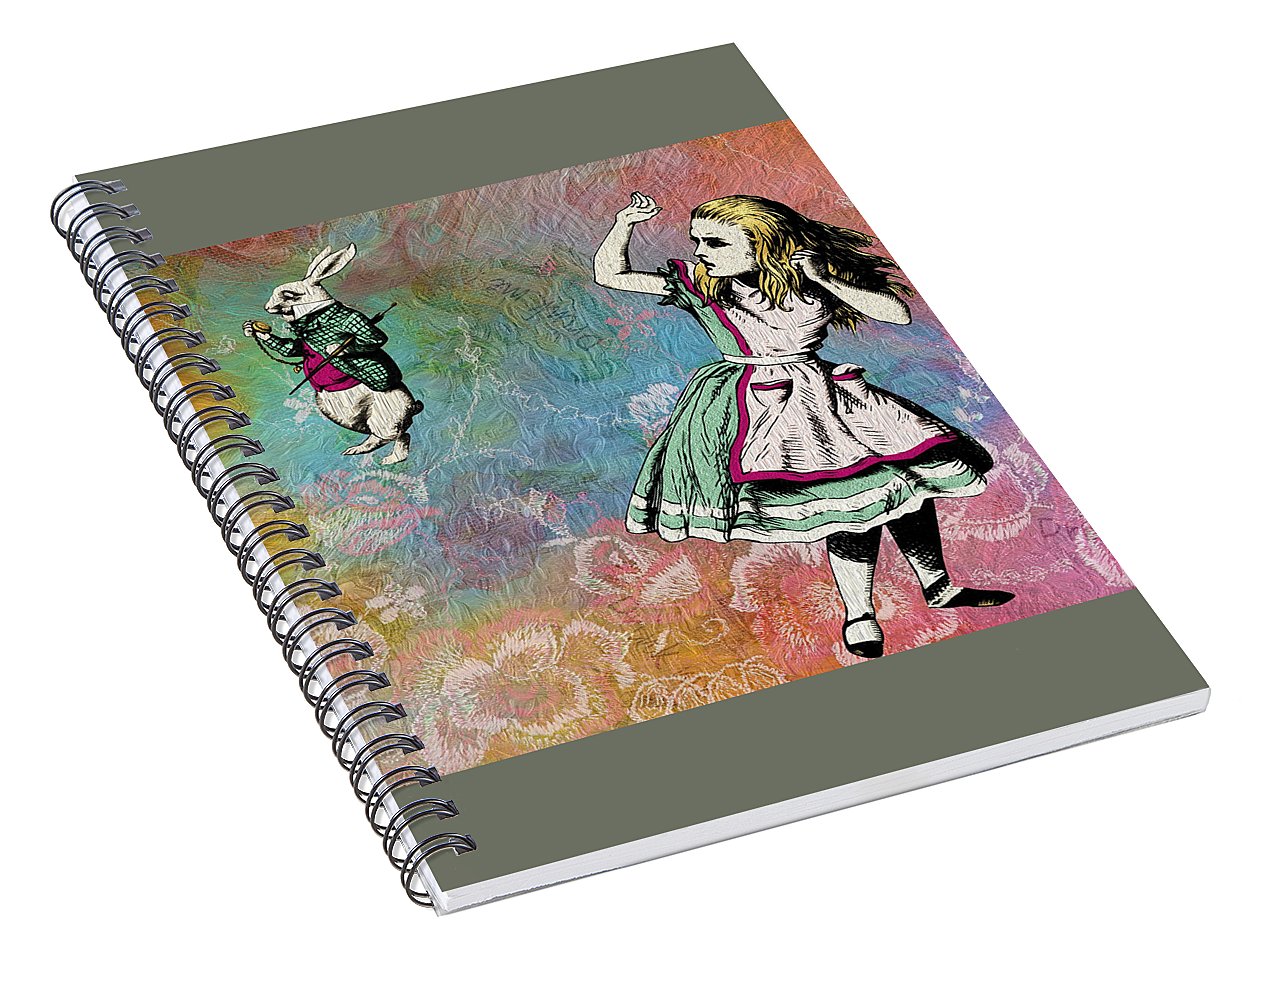 Alice In Wonderland - White Rabbit - Spiral Notebook